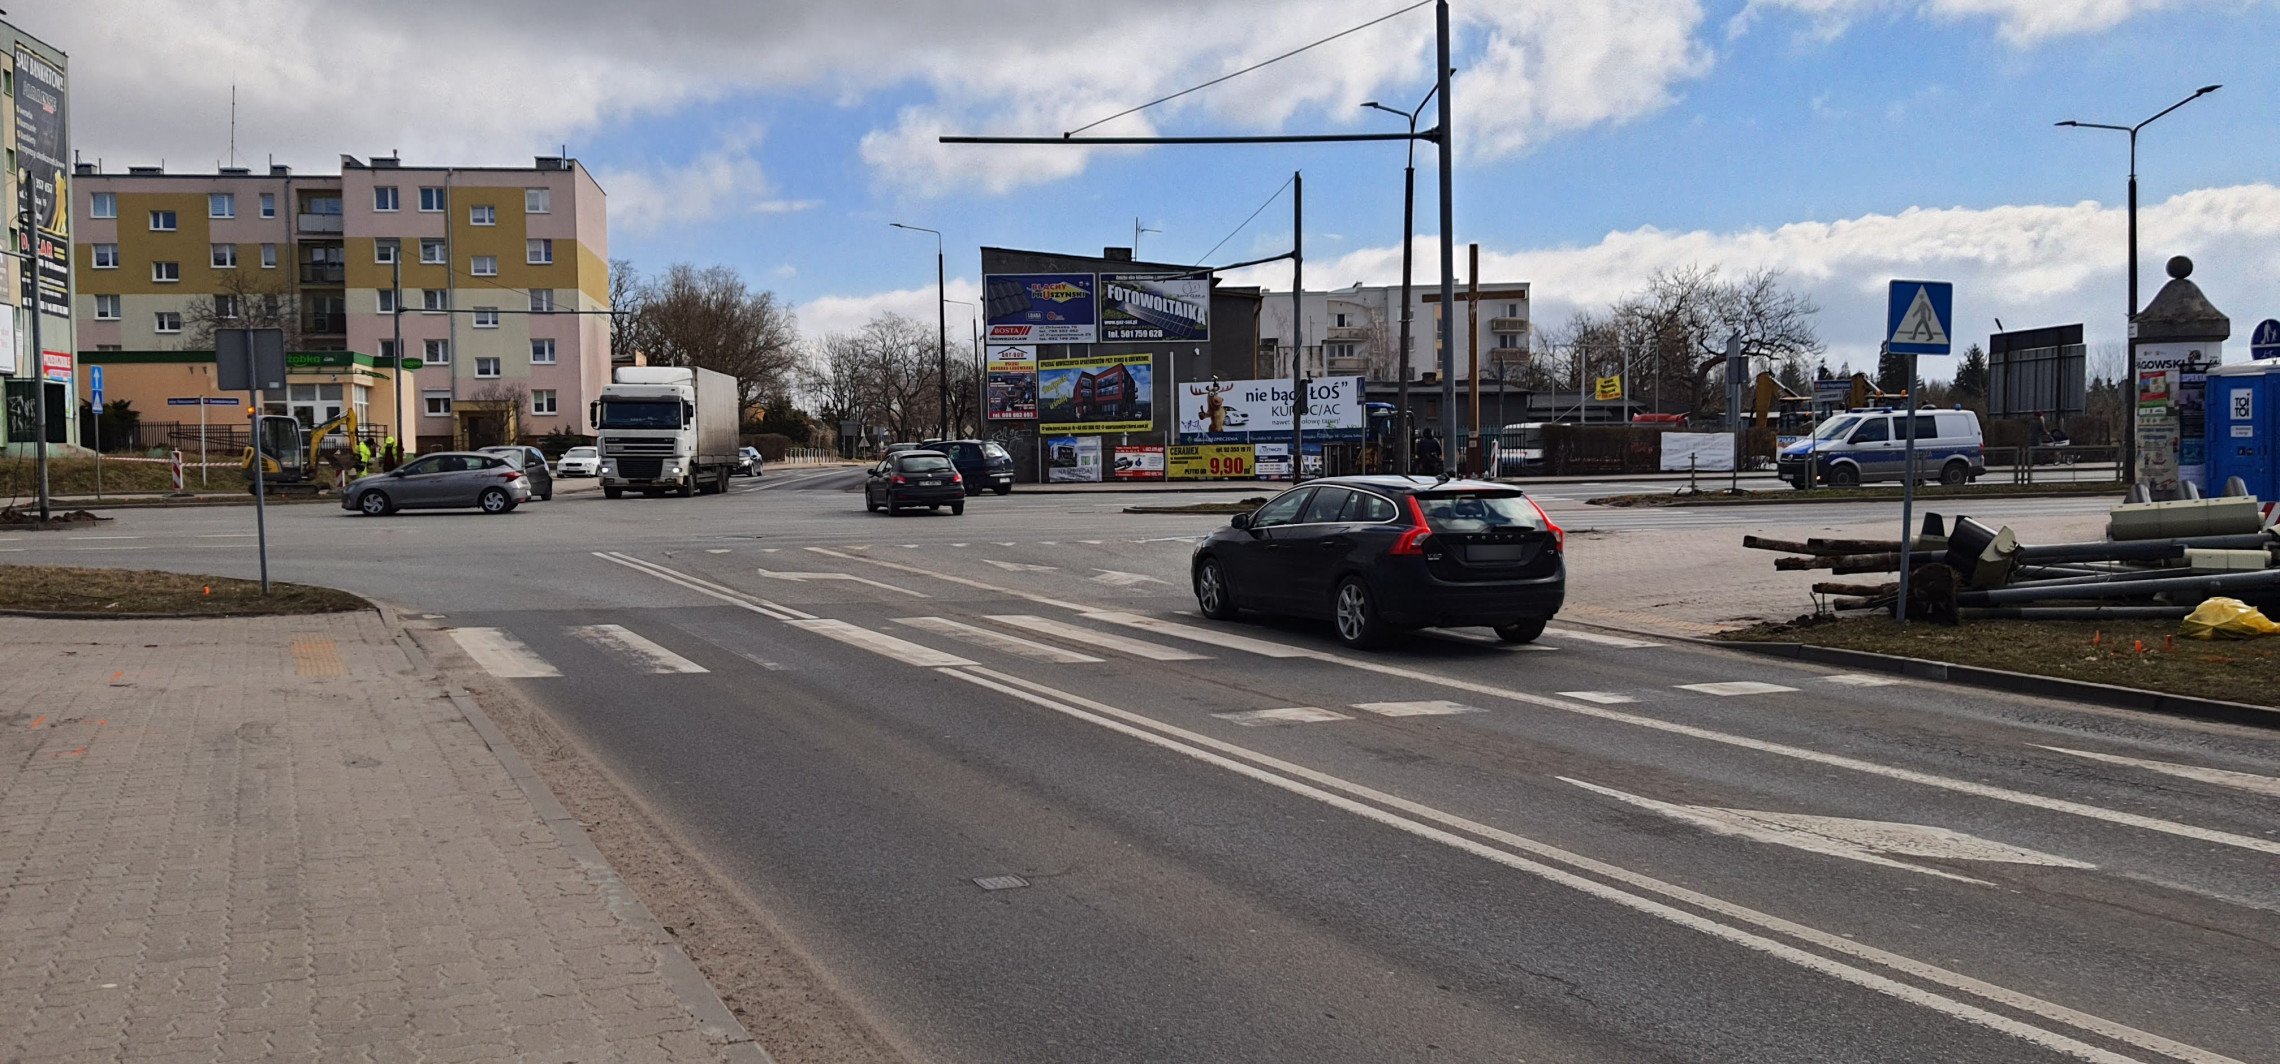 Inowrocław - Policjanci kierują ruchem, kierowcy mają problem